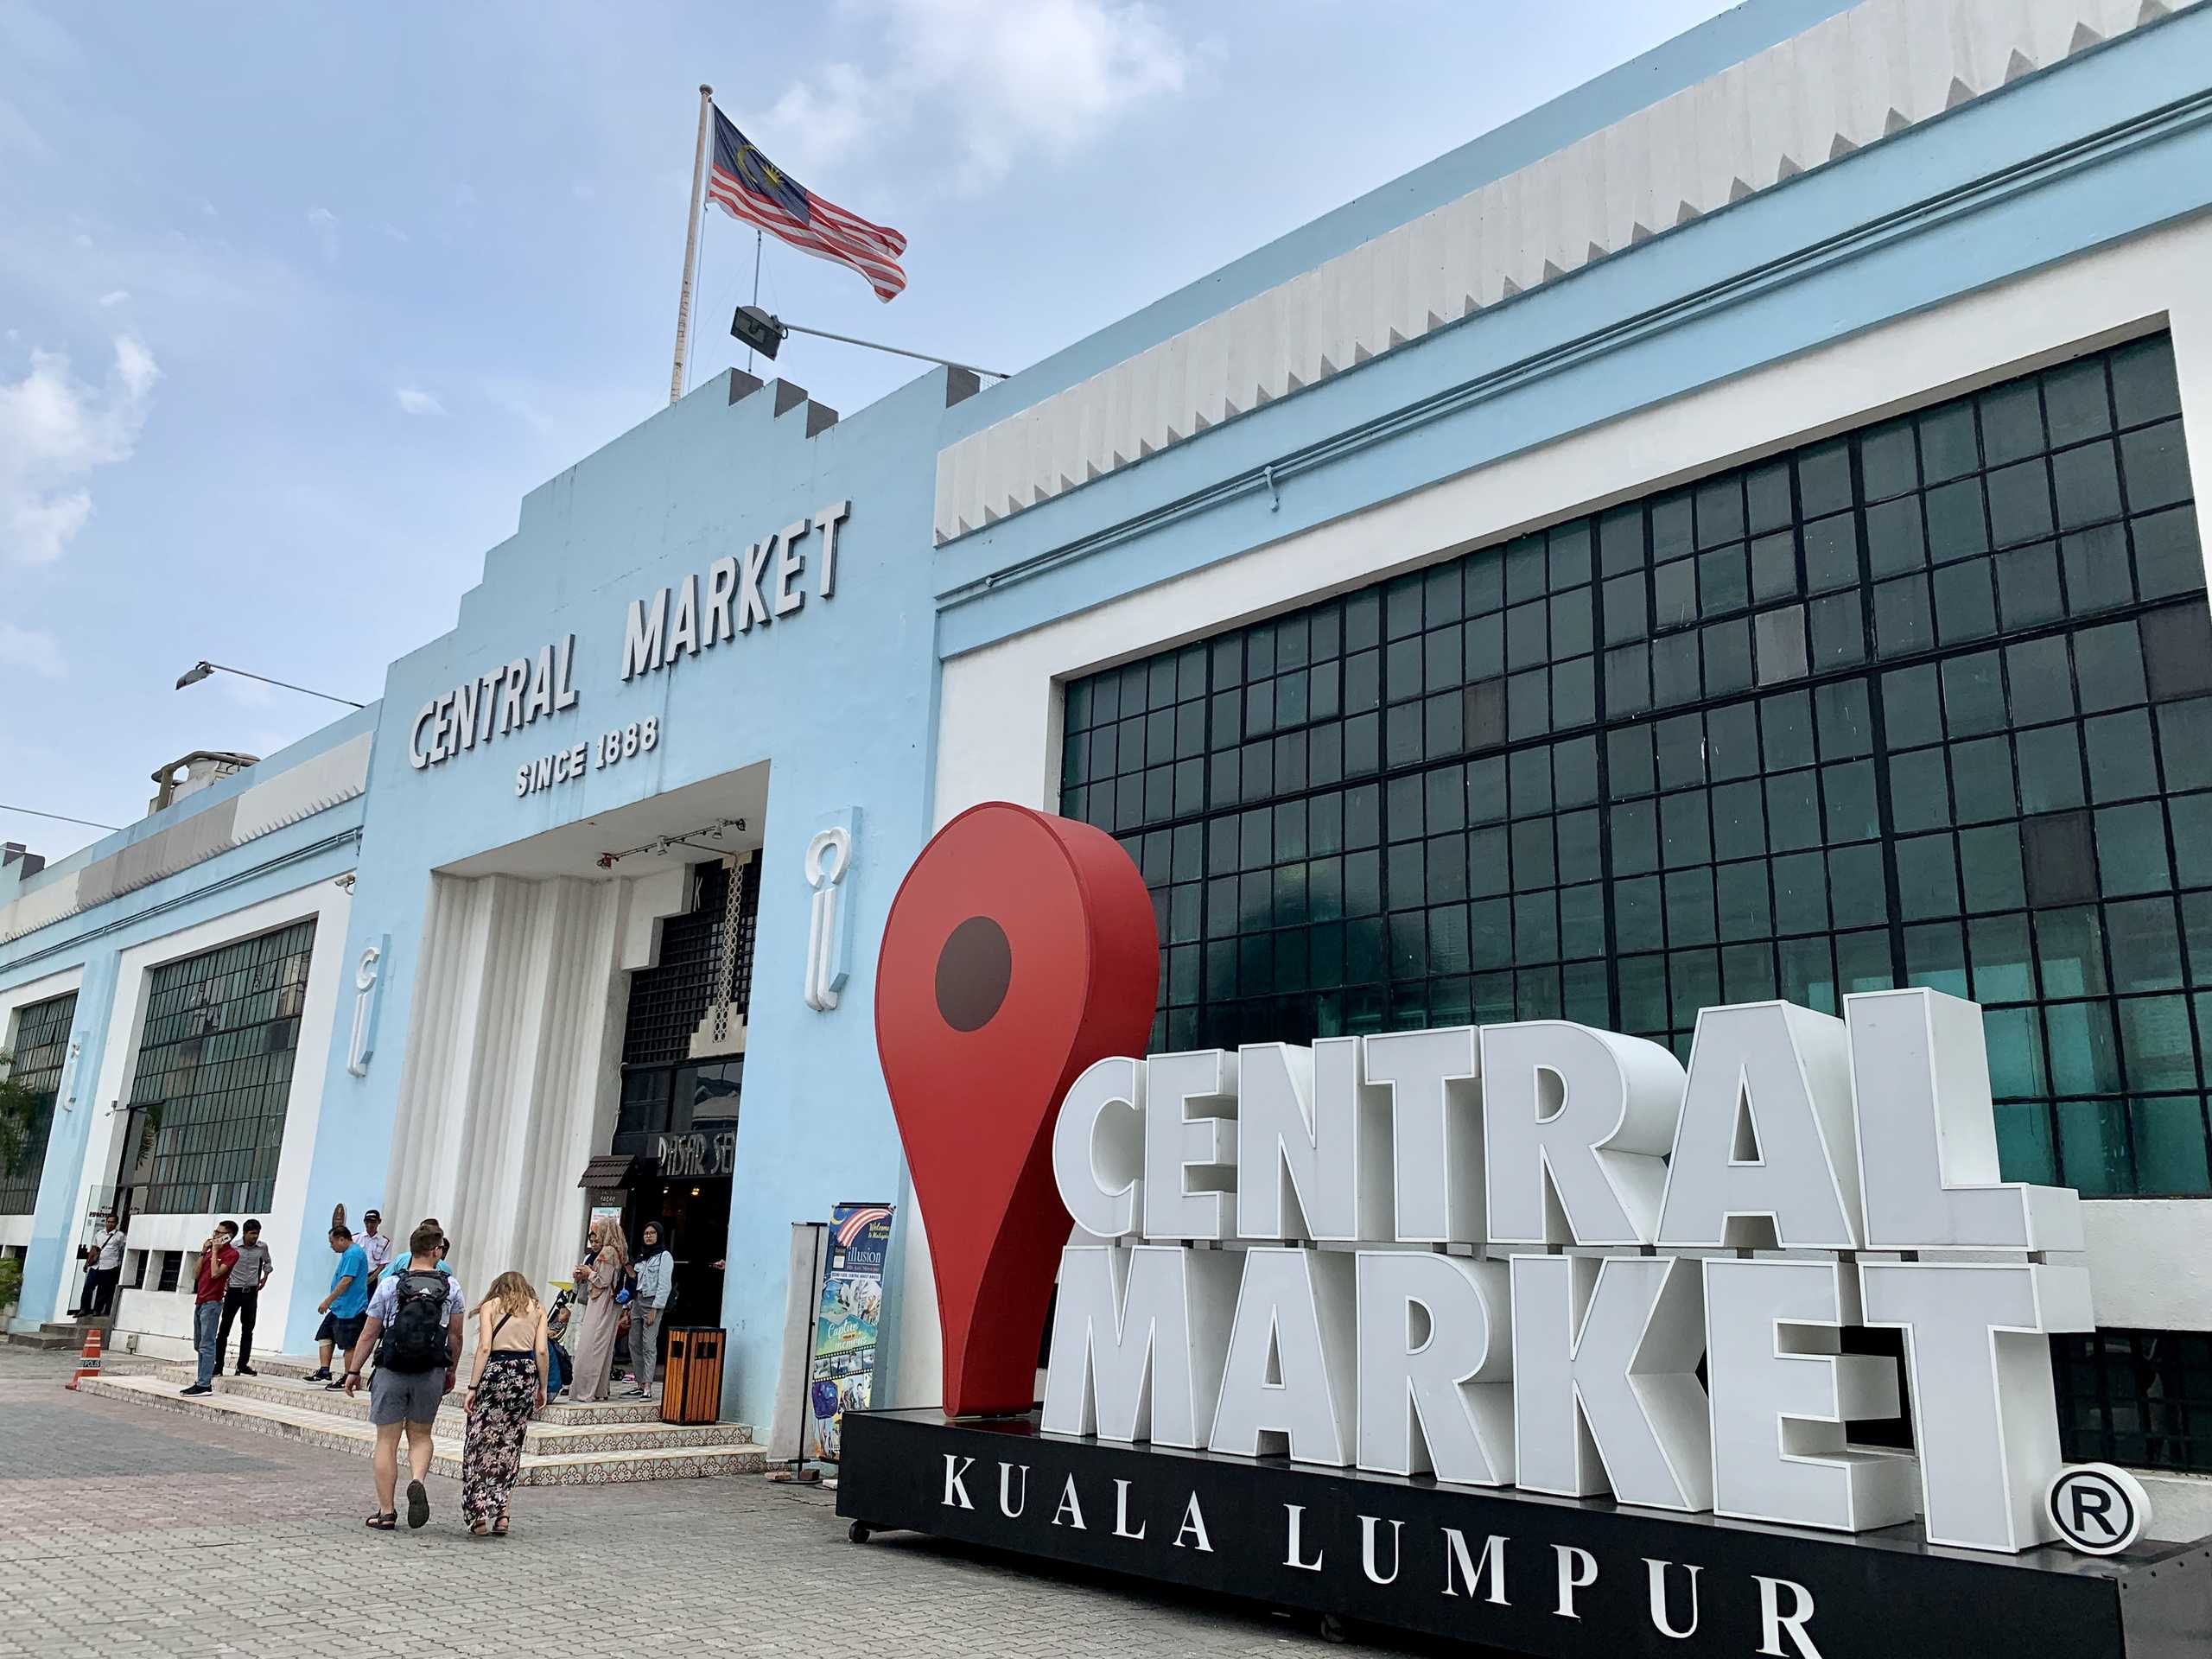 KL central market